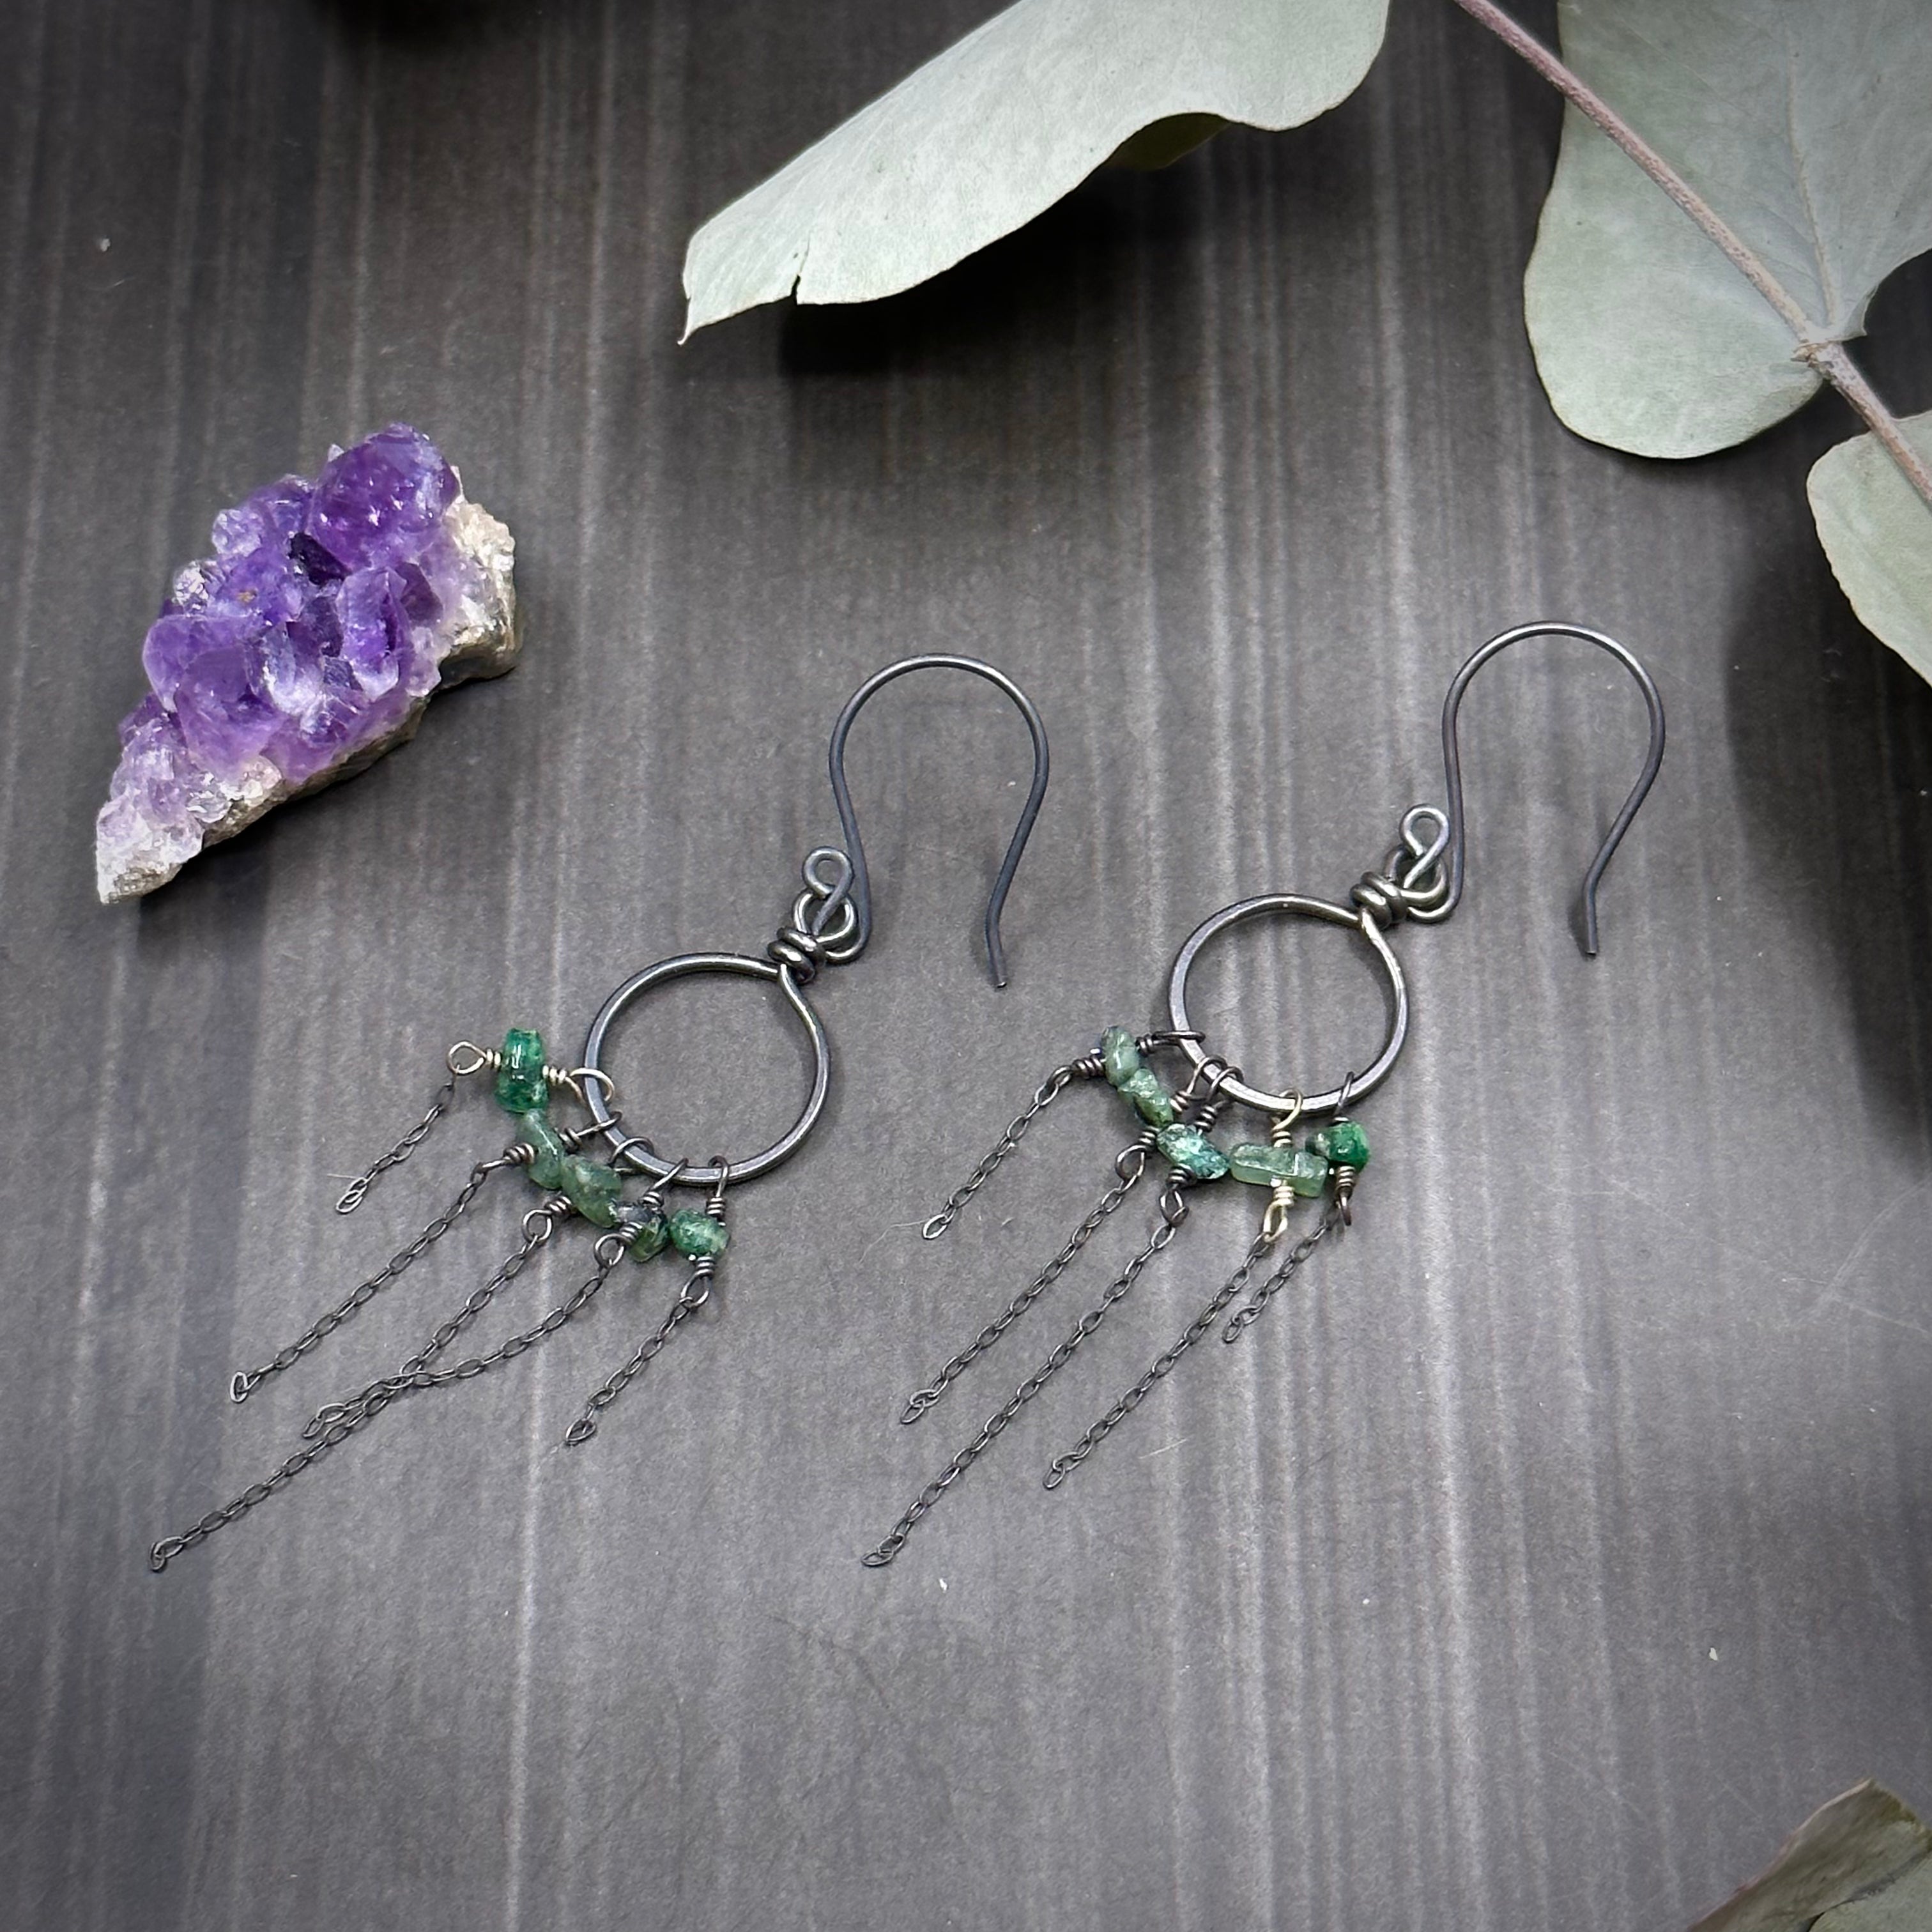 Emerald and Sterling Silver Hoop Earrings